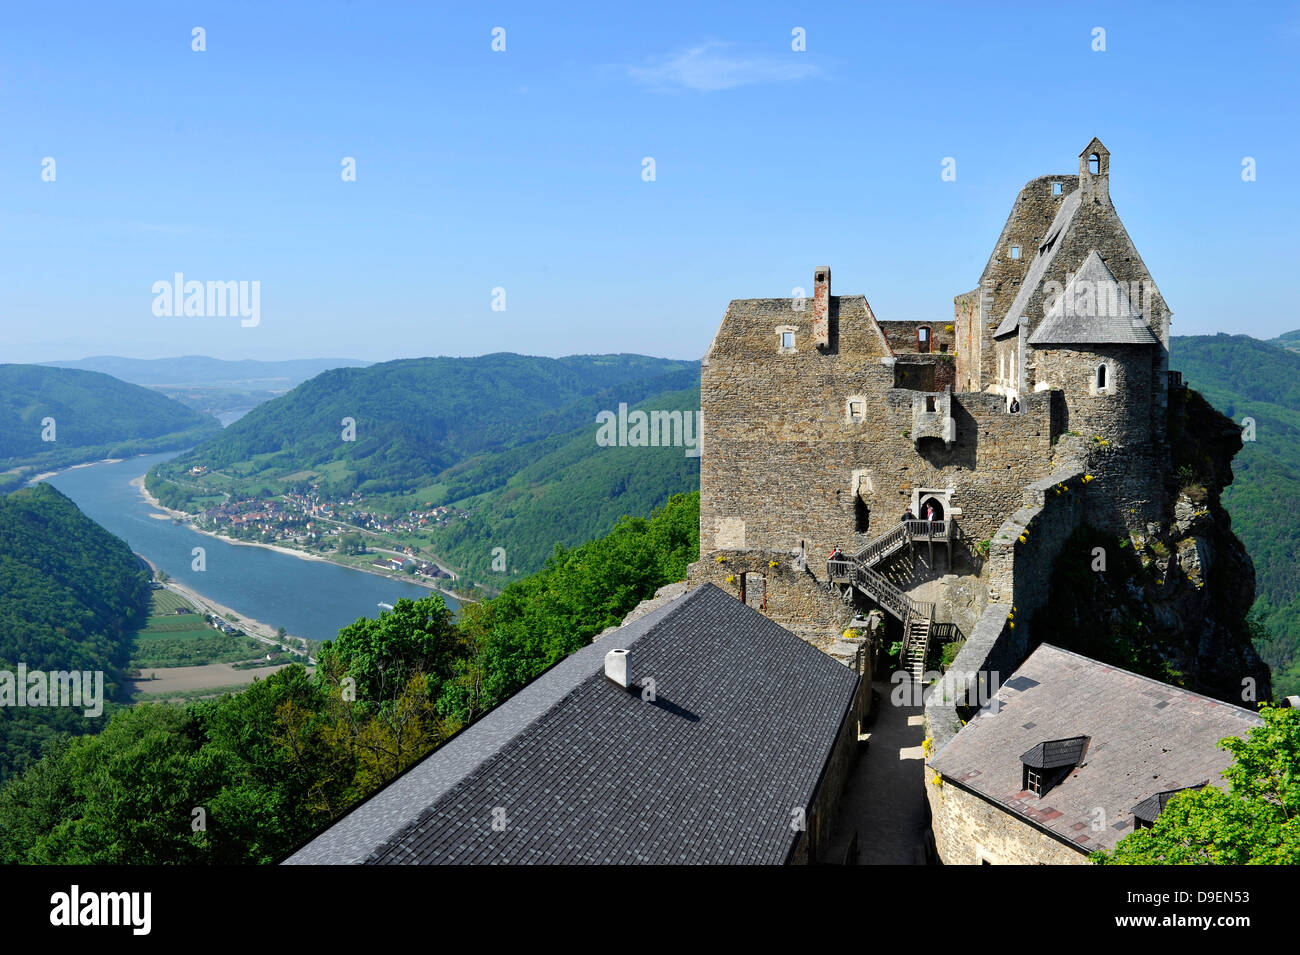 Ruinierte Burg Aggstein, Wachau, UNESCO-Weltkulturerbe Welt Natur Erbe Wachau, Niederösterreich, Österreich, Europa Stockfoto